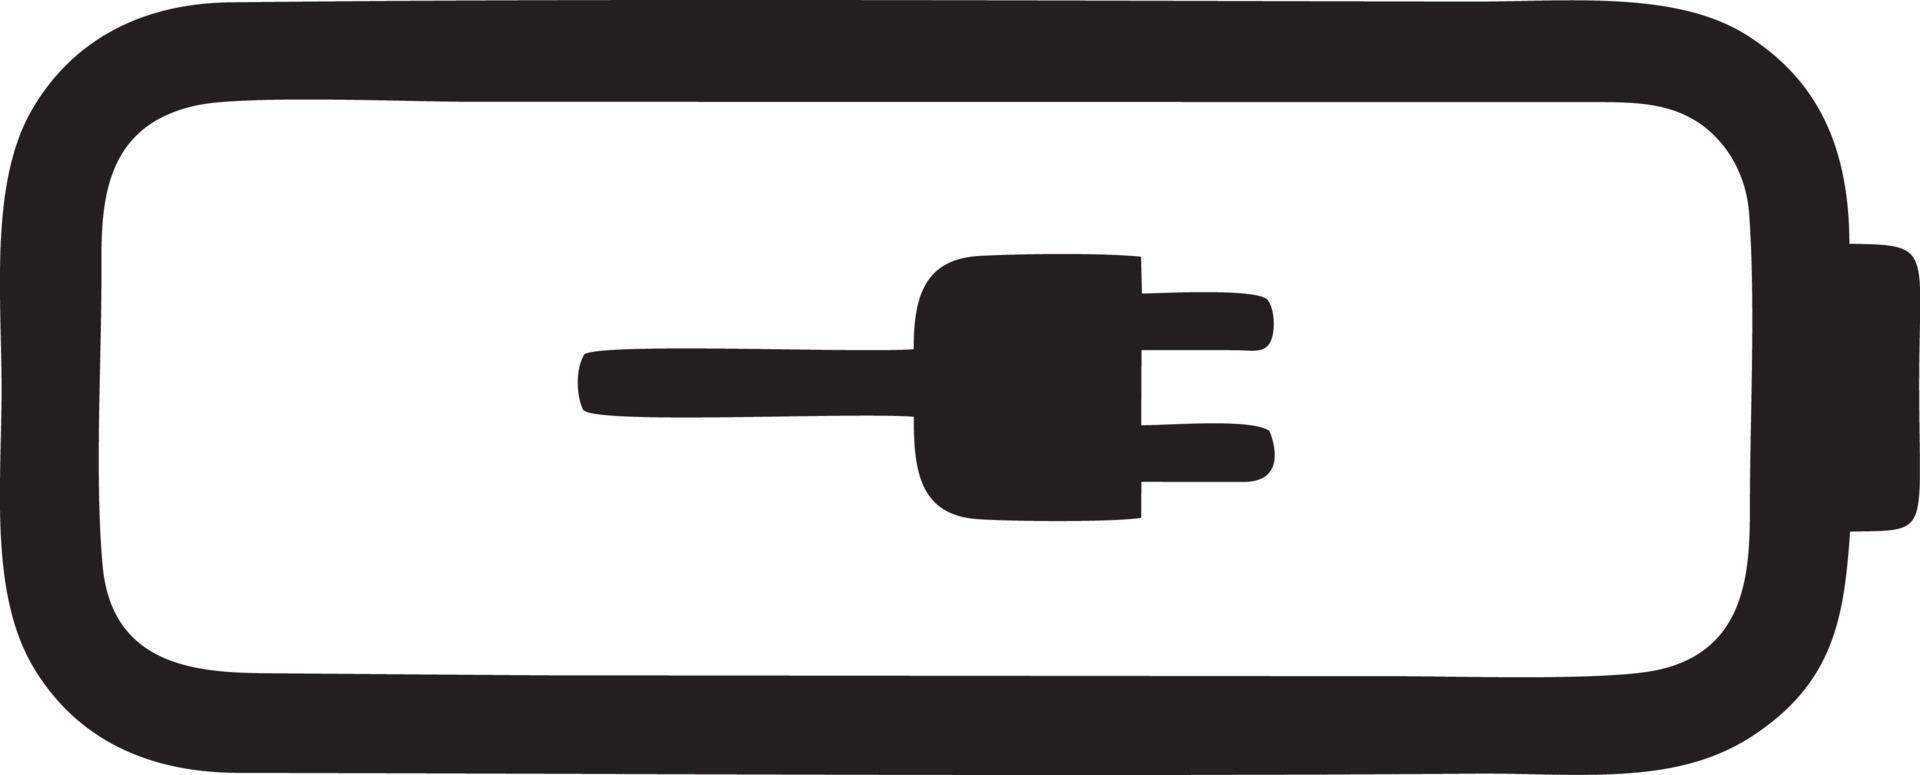 Batterie Energie Symbol Symbol Vektor Bild. Illustration von das Batterien aufladen elektrisch Symbol Design Bild. eps 10